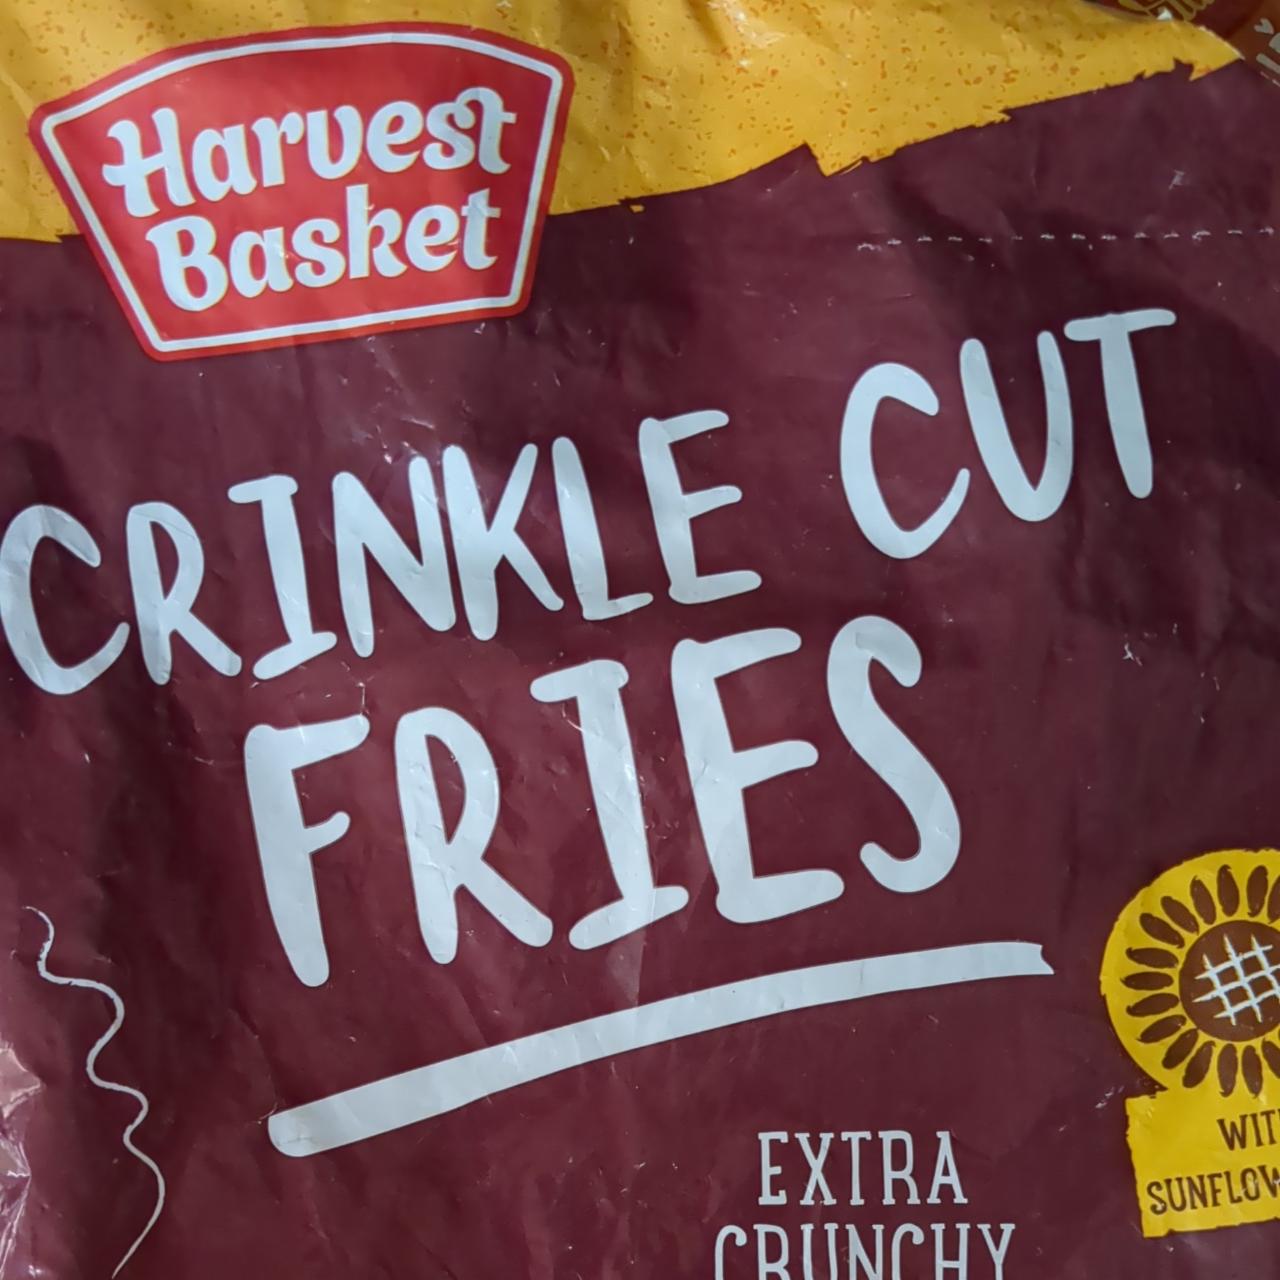 Fotografie - Crinkle cut fries Extra Crunchy Harvest Basket